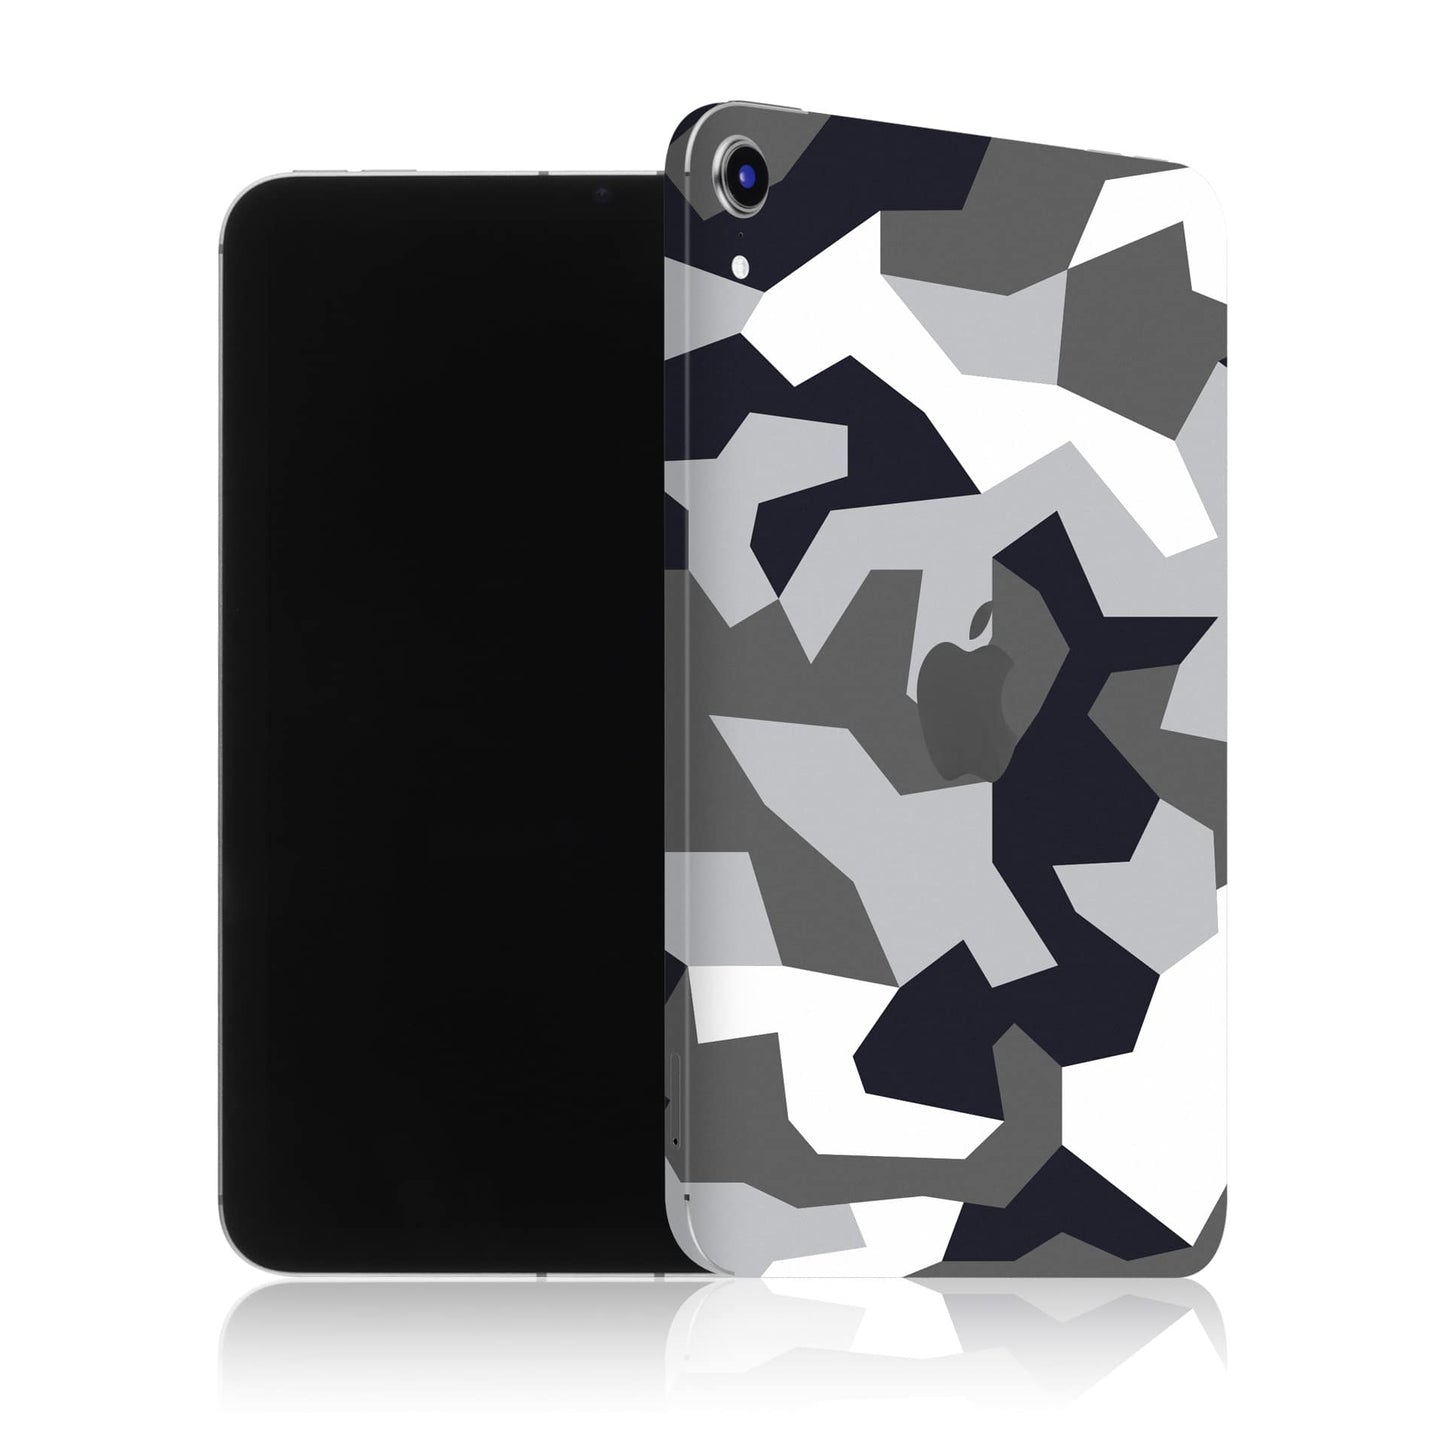 iPad Mini 6 - Camouflage